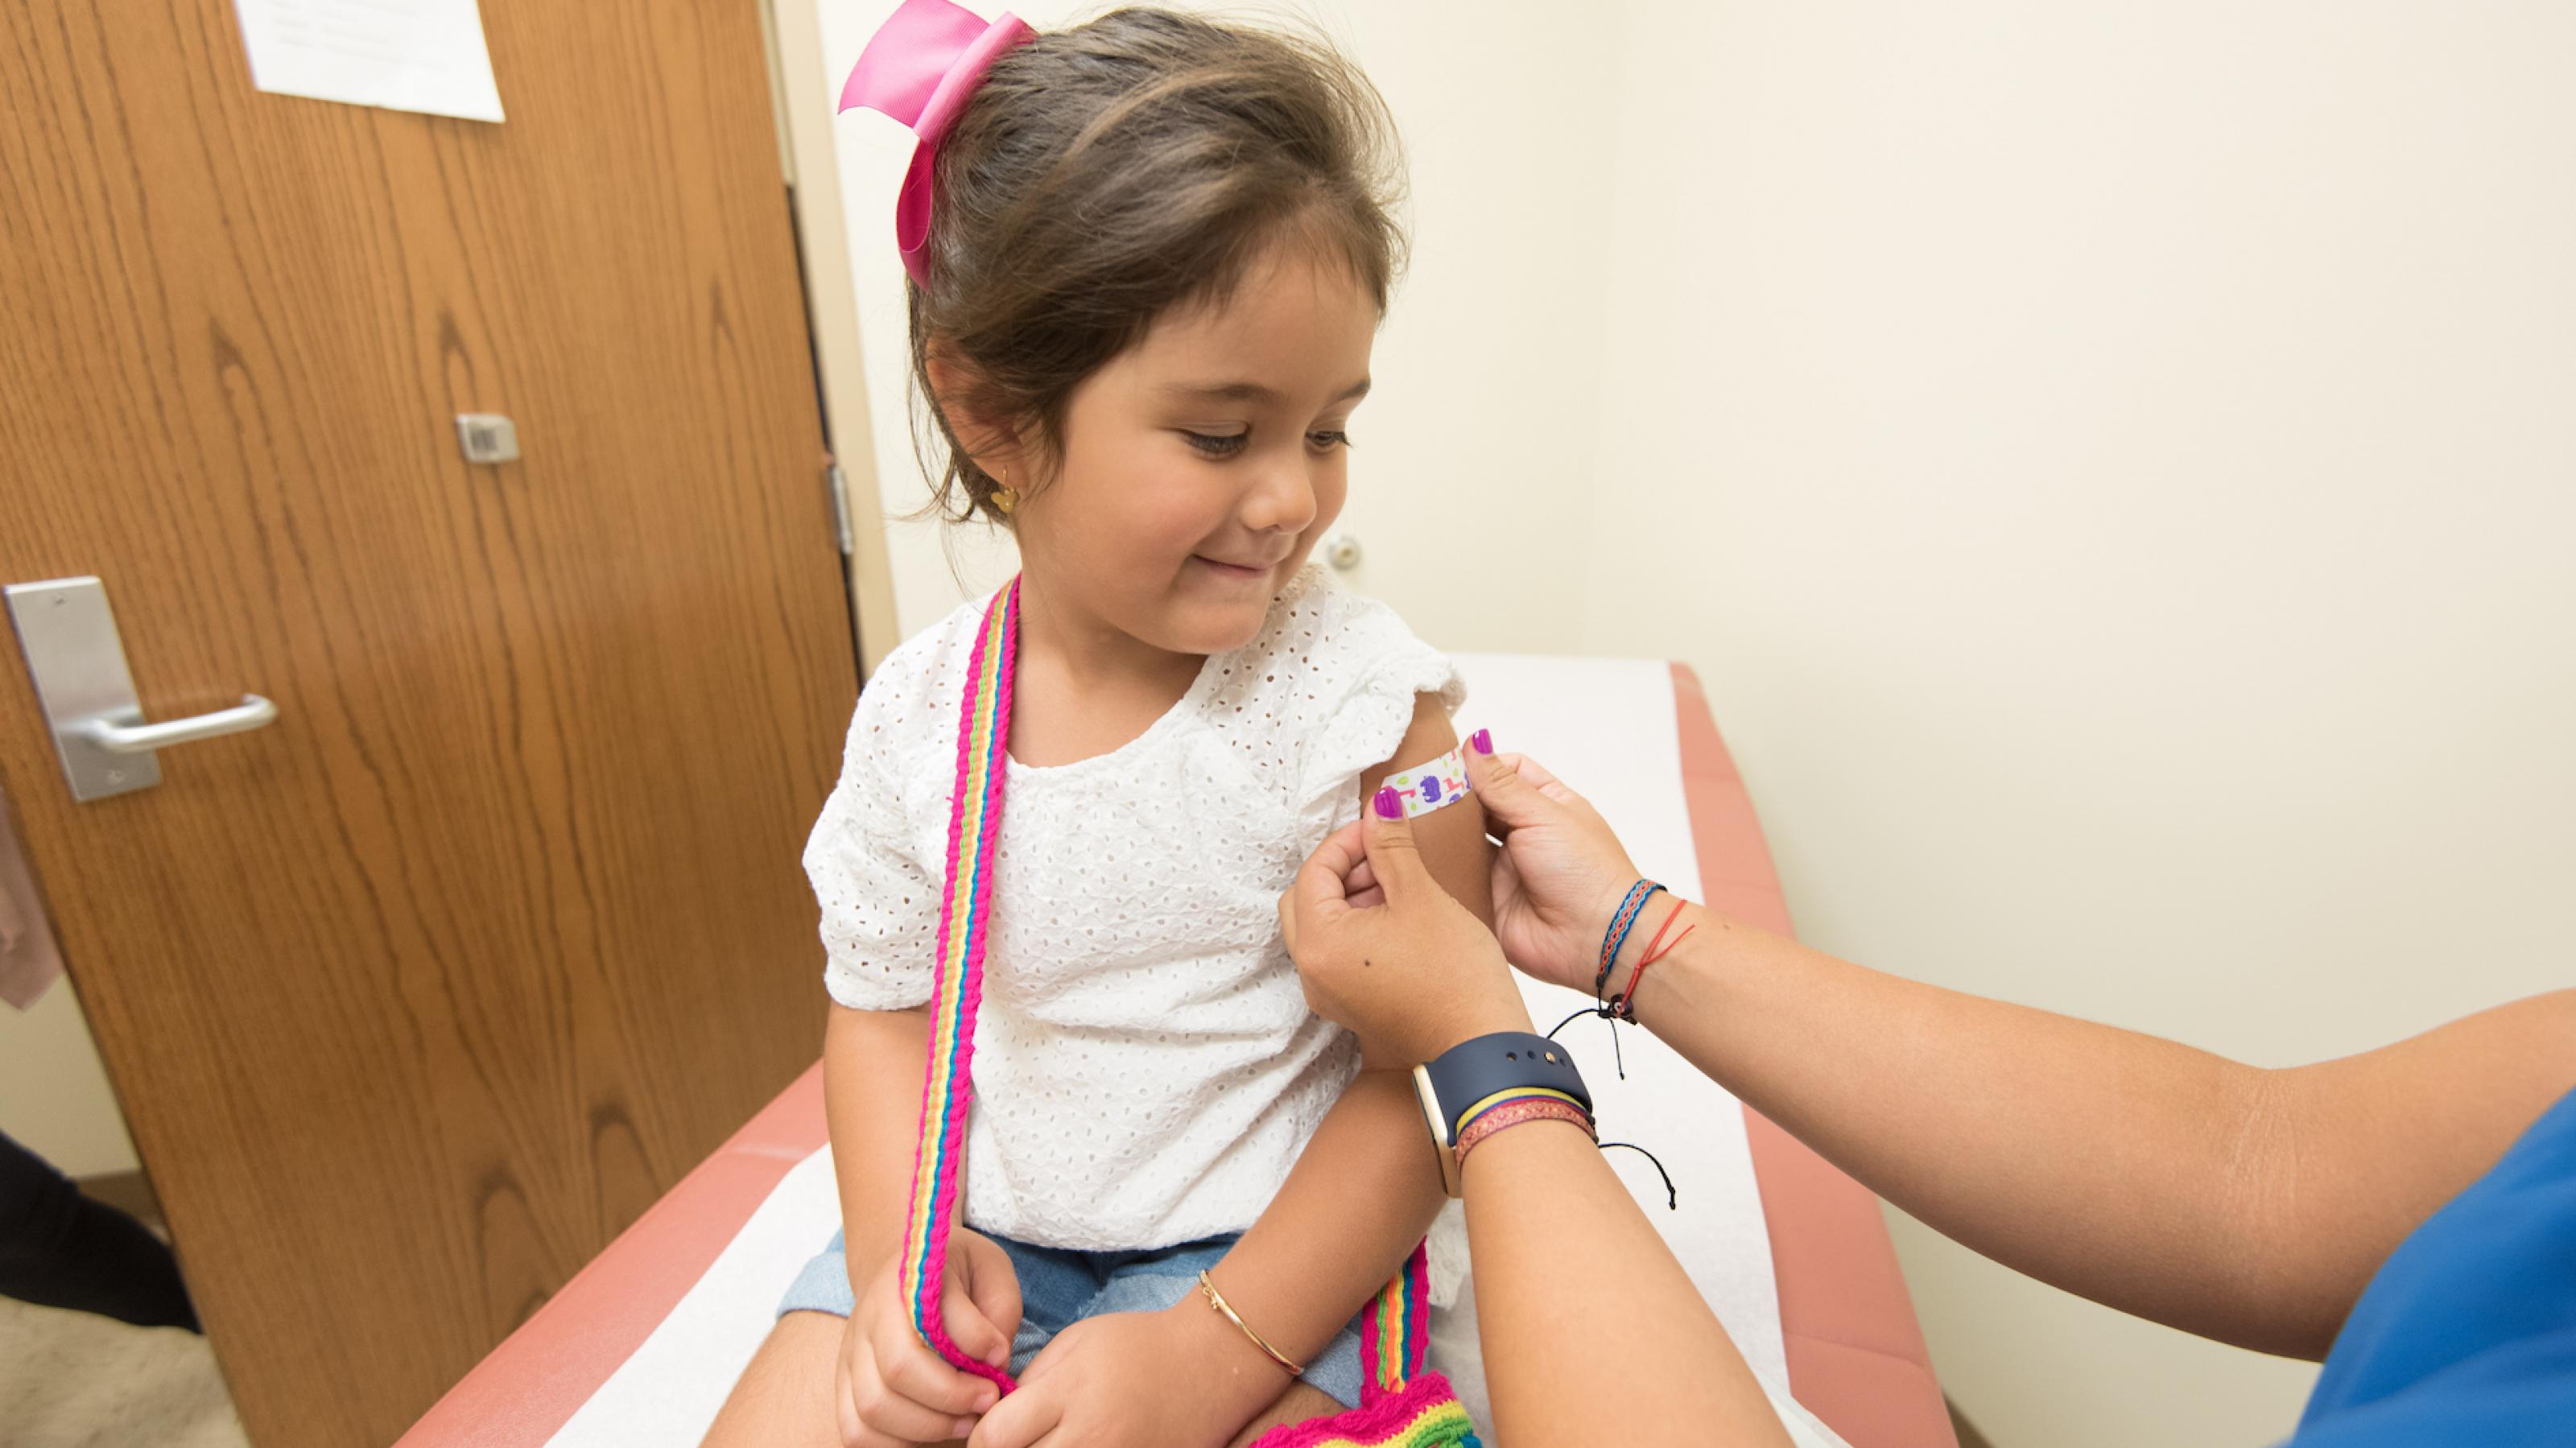 Auf dem Bild ist ein kleines Mädchen mit brauchen Haaren und einer bunten Umhängetasche zu sehen, die gerade ein Pflaster auf den Oberarm bekommt, weil sie bei der Ärztin eine Impfung erhalten hat.